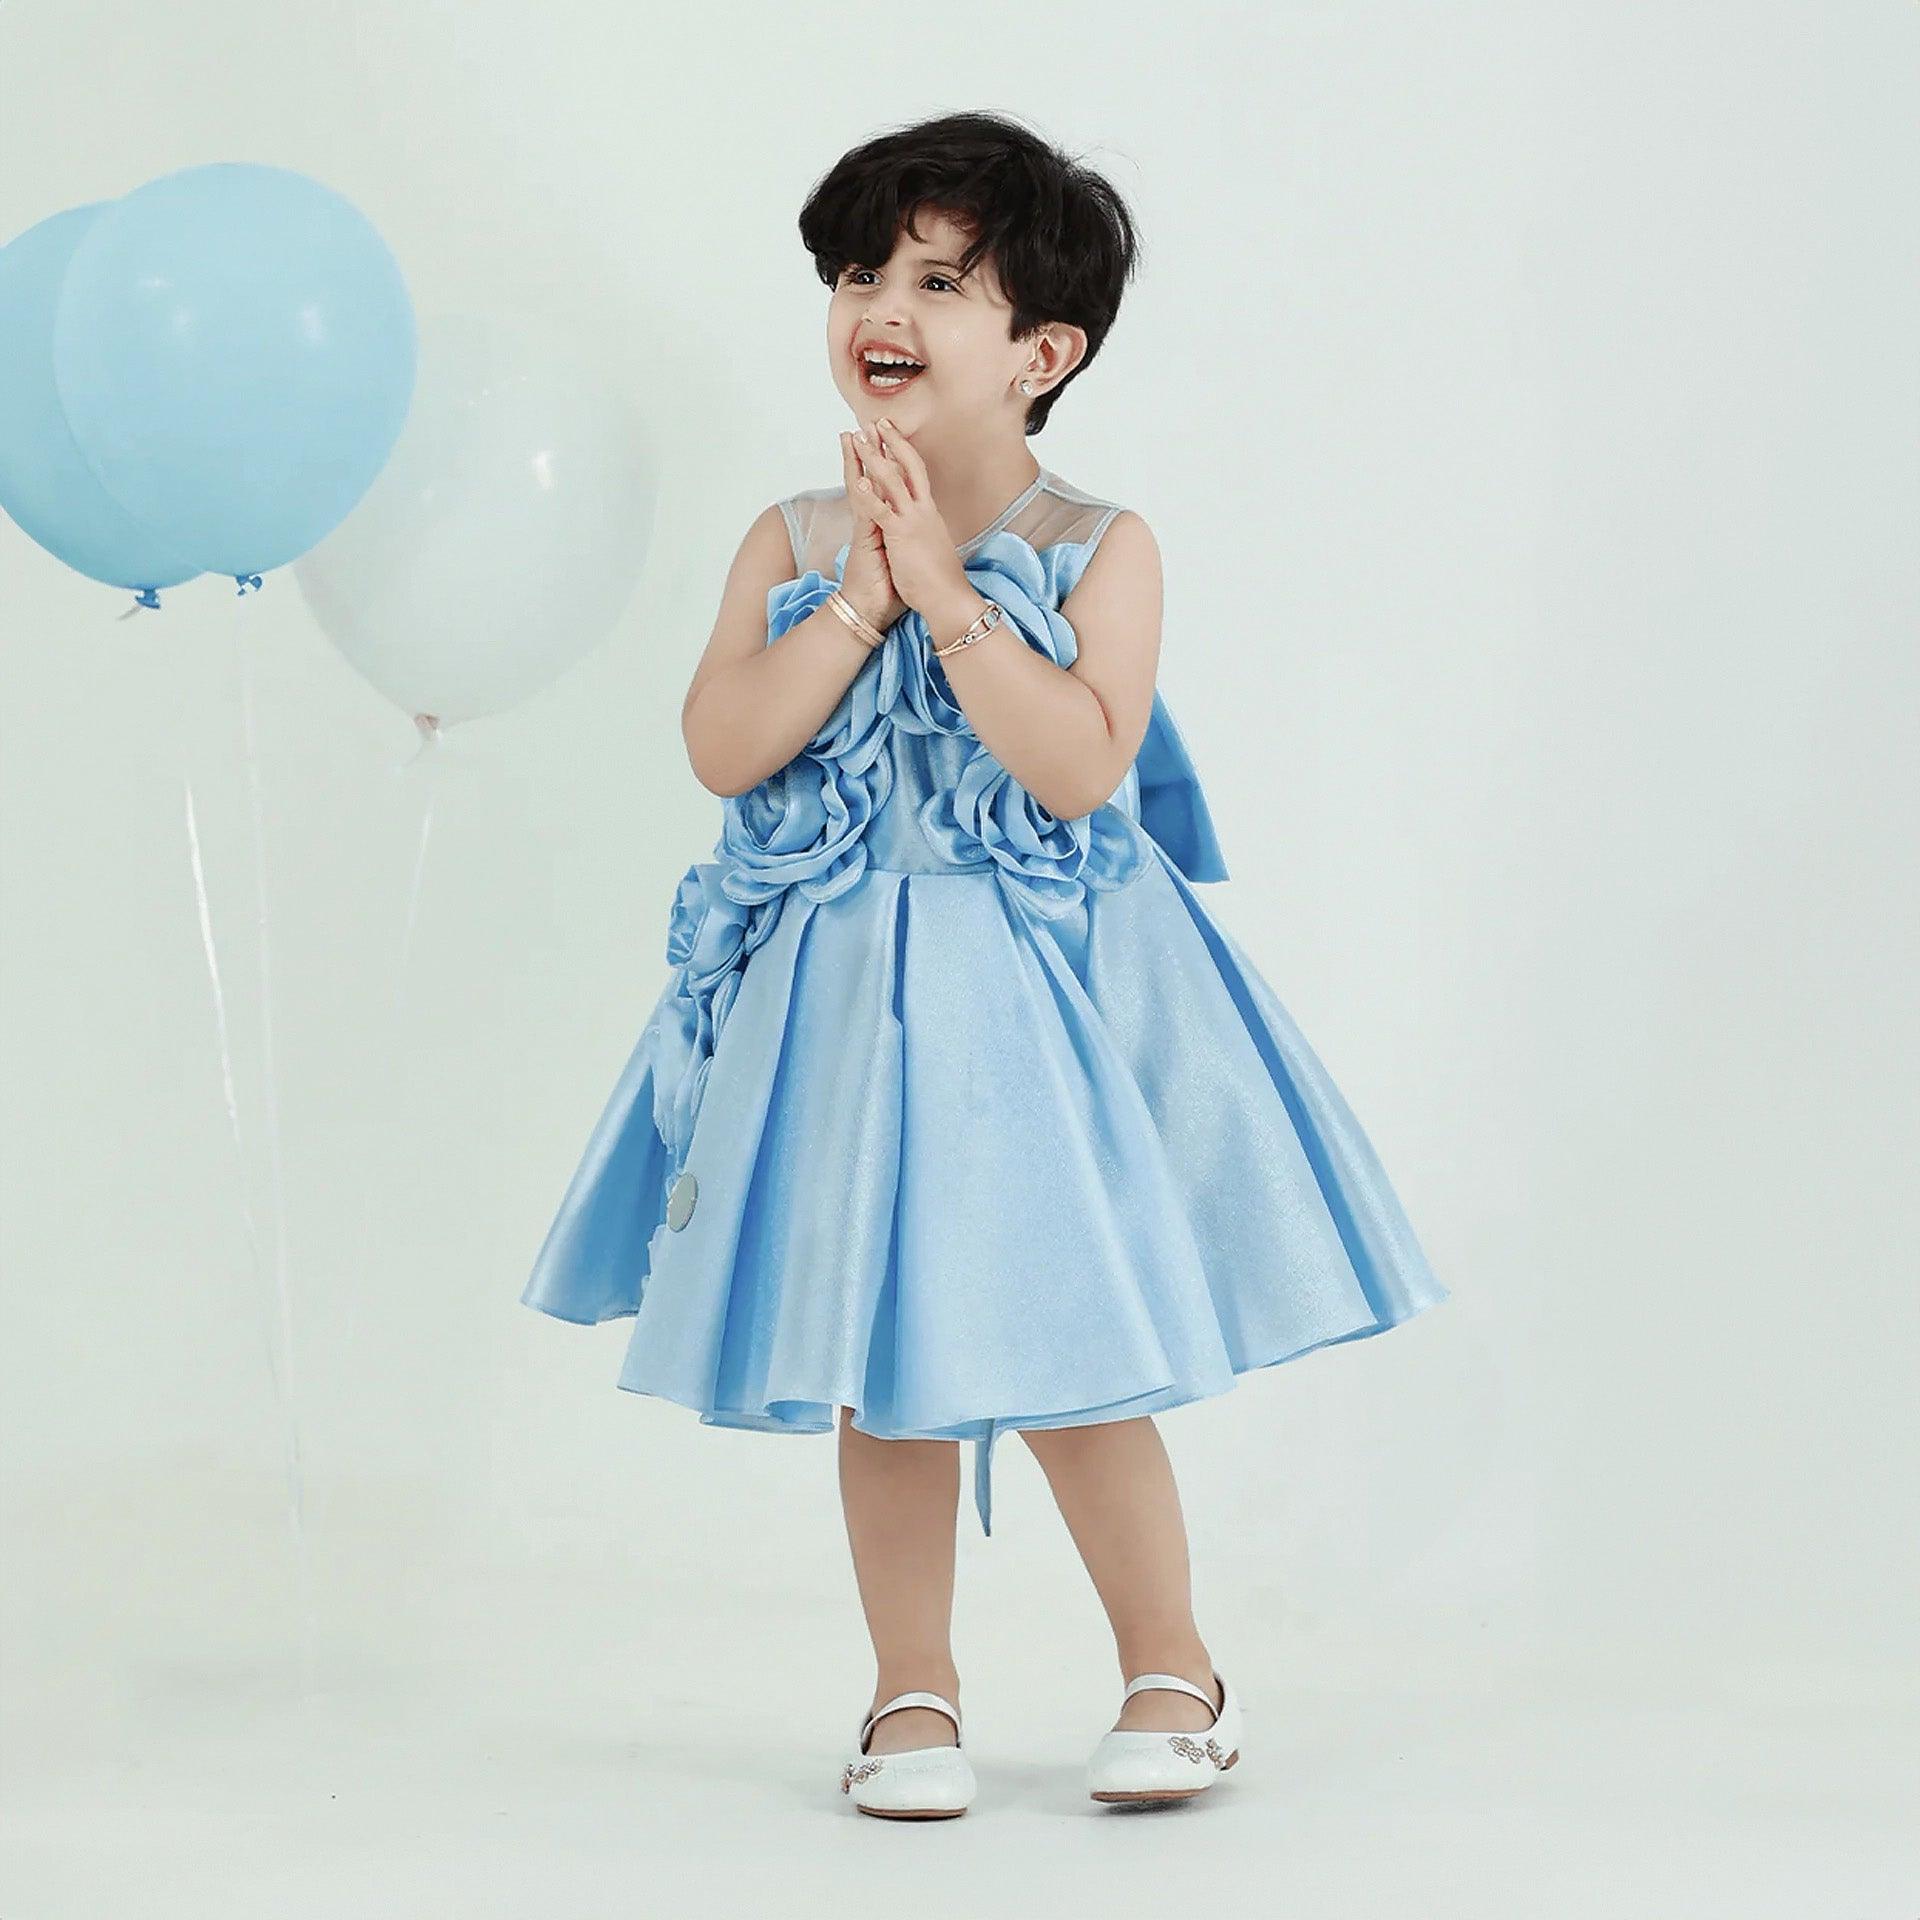 Light Sky Blue "Ladan" Dress By Shams Kids - WECRE8